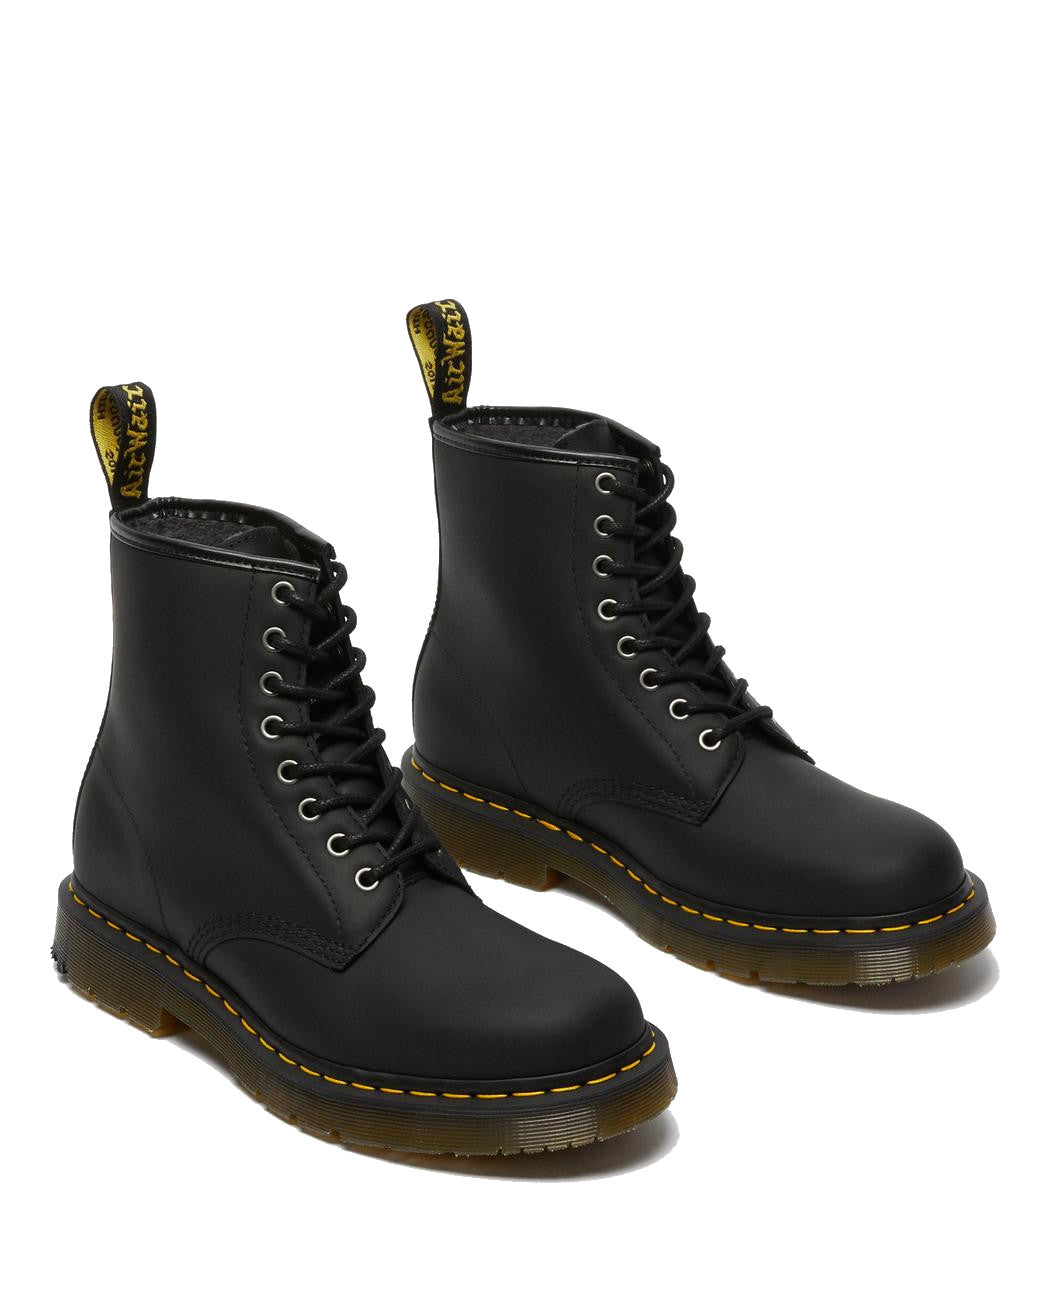 Dr Martens Men's 1460 DM's Water Resistant Wintergrip Lace Up Boots - Black